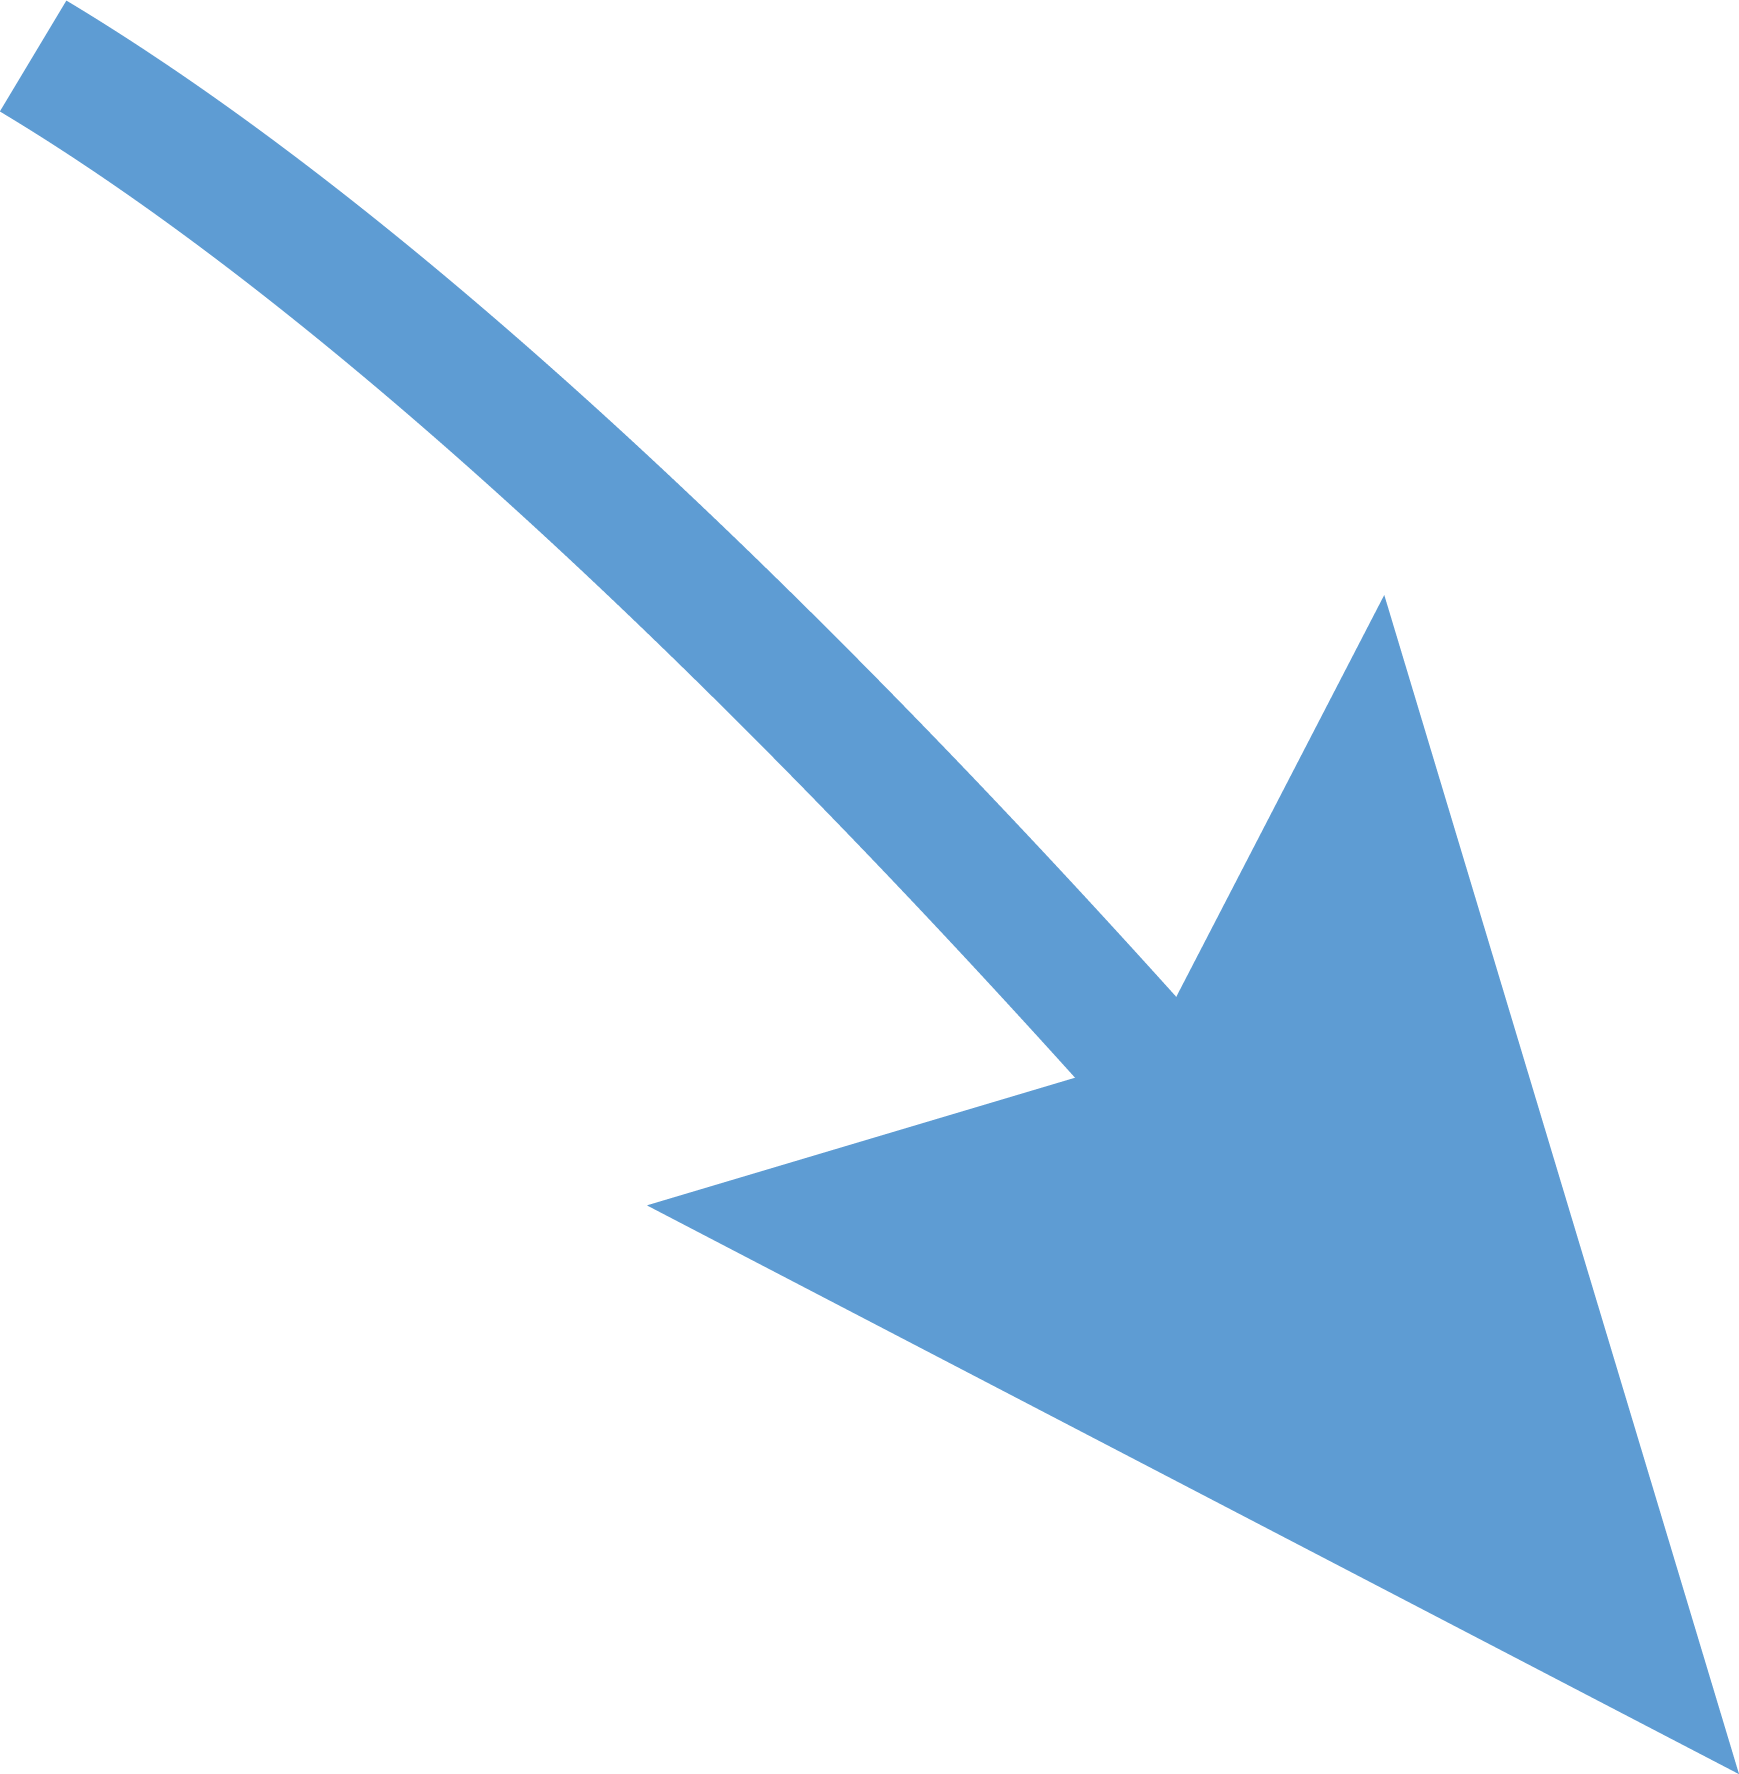 curved arrow